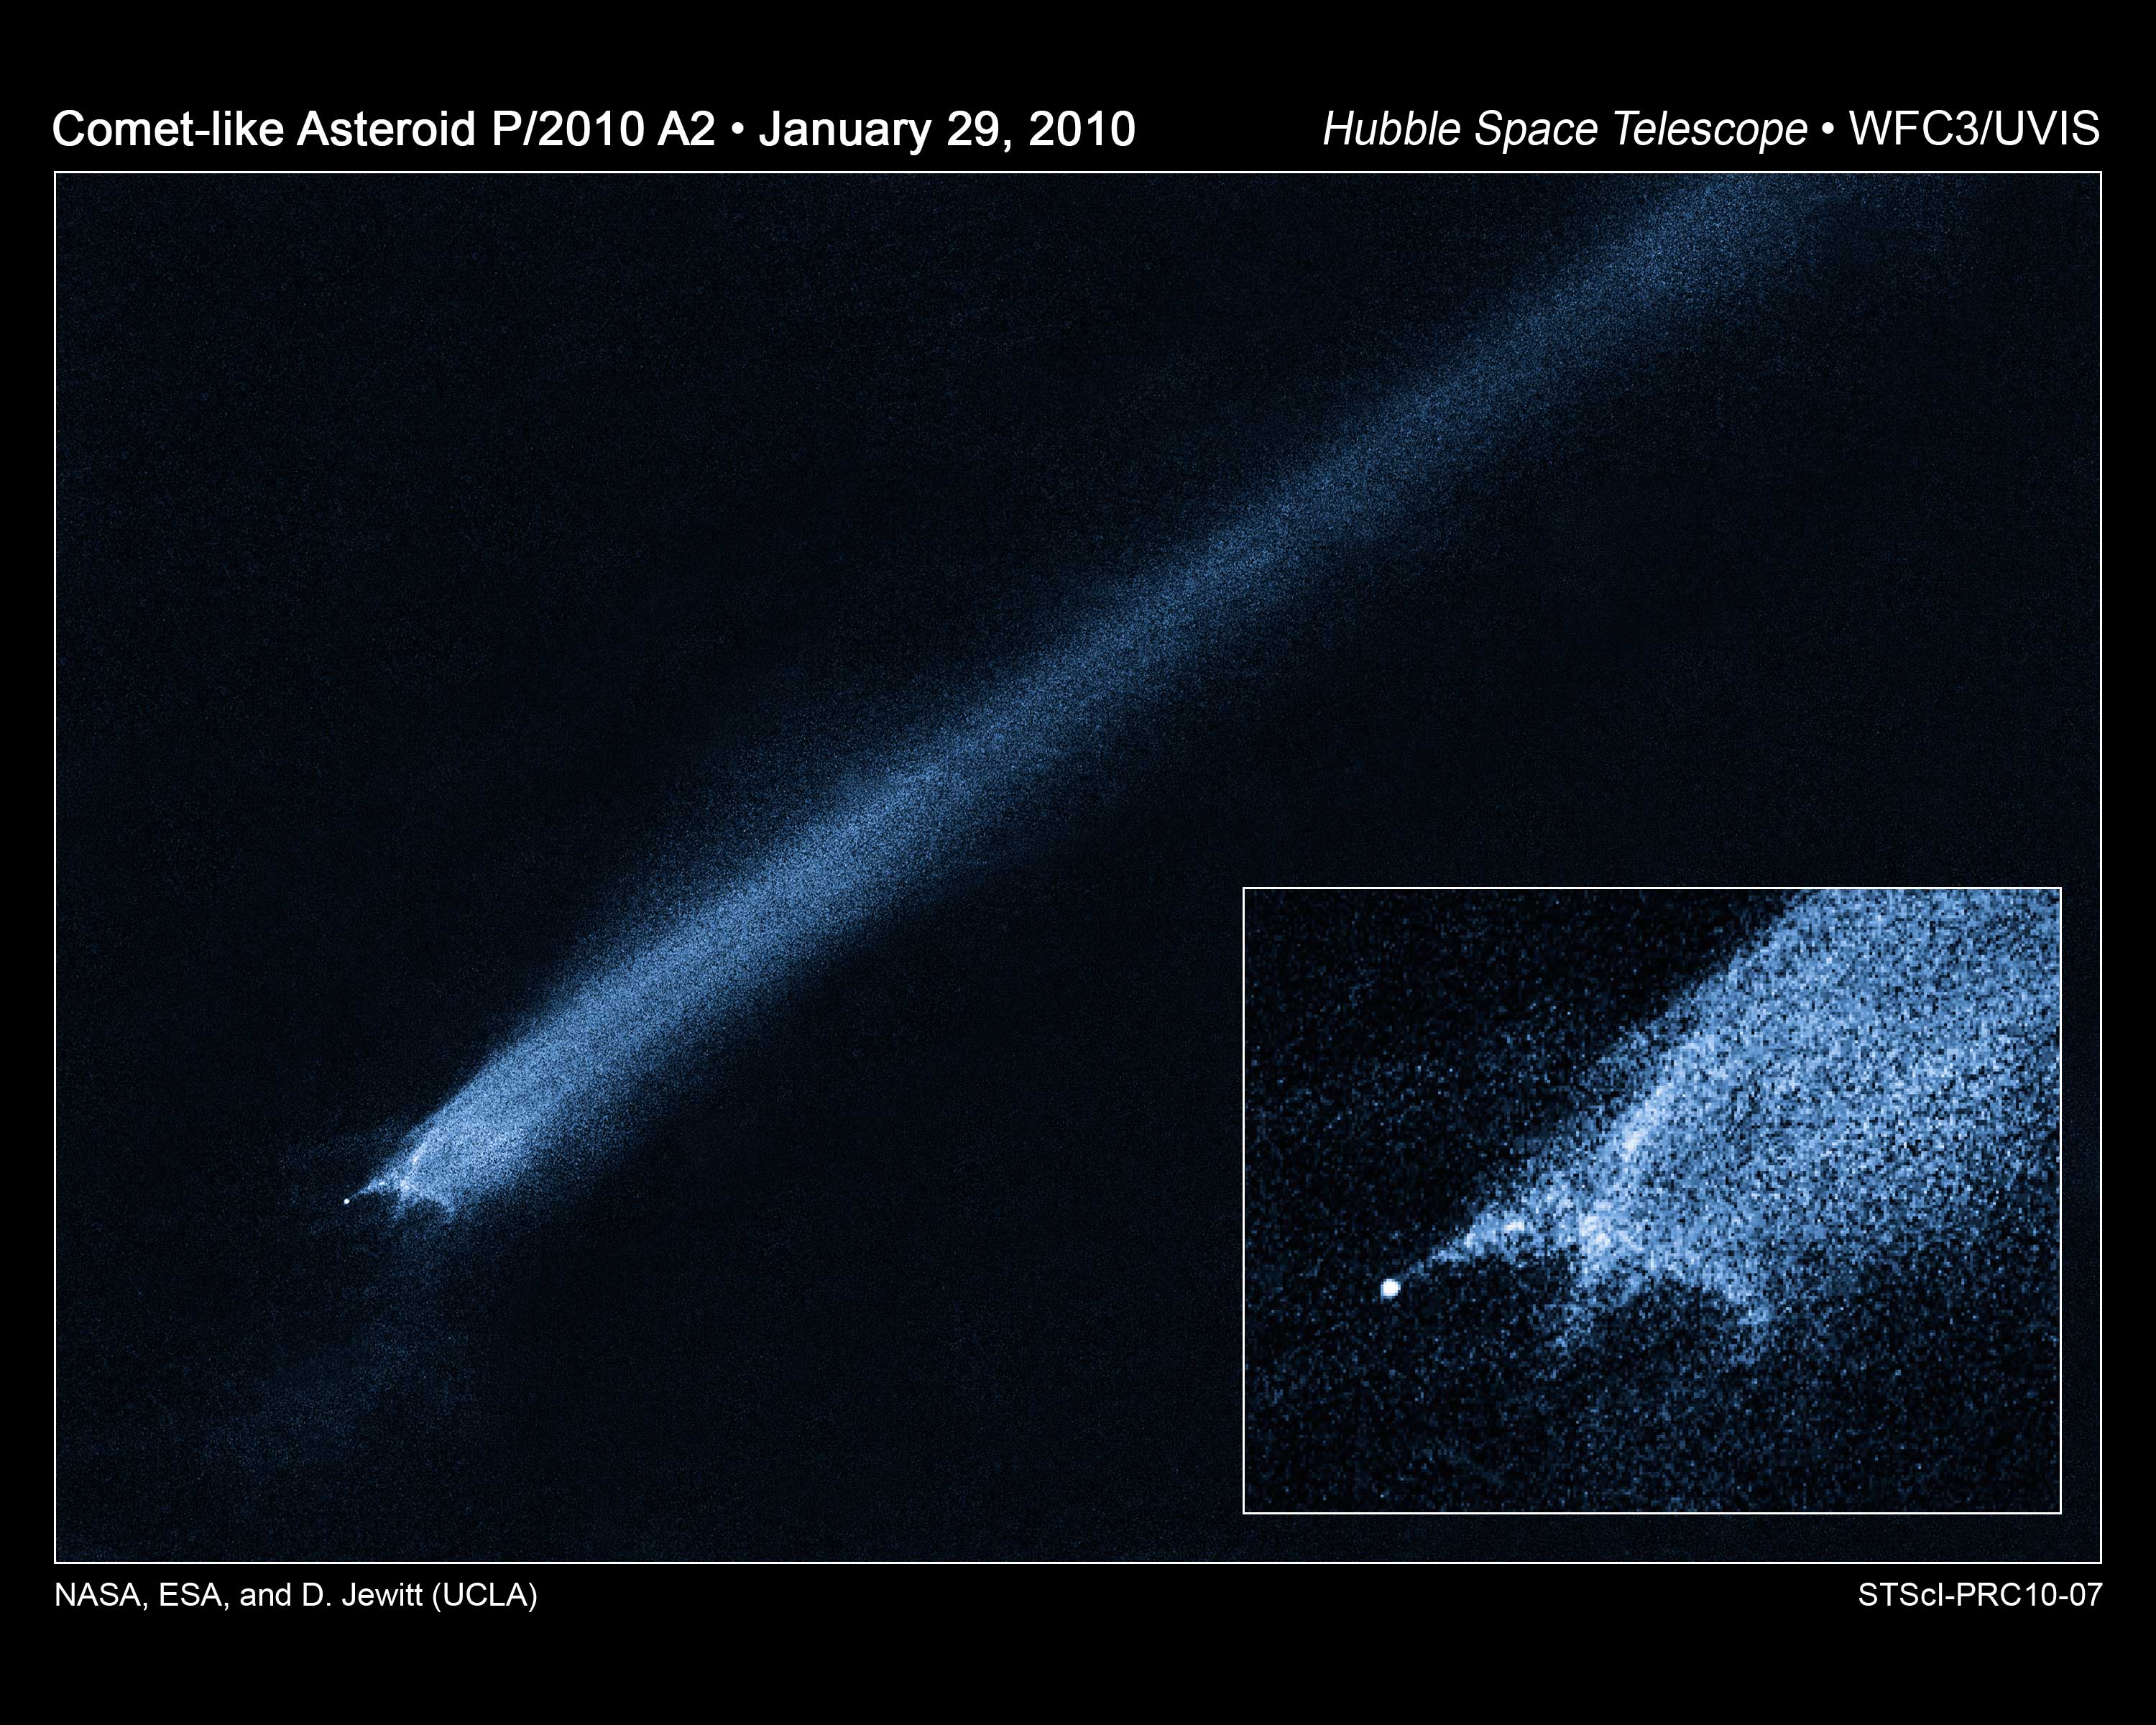 P/2010 A2, l’astéroïde qui aurait survécu à une collision